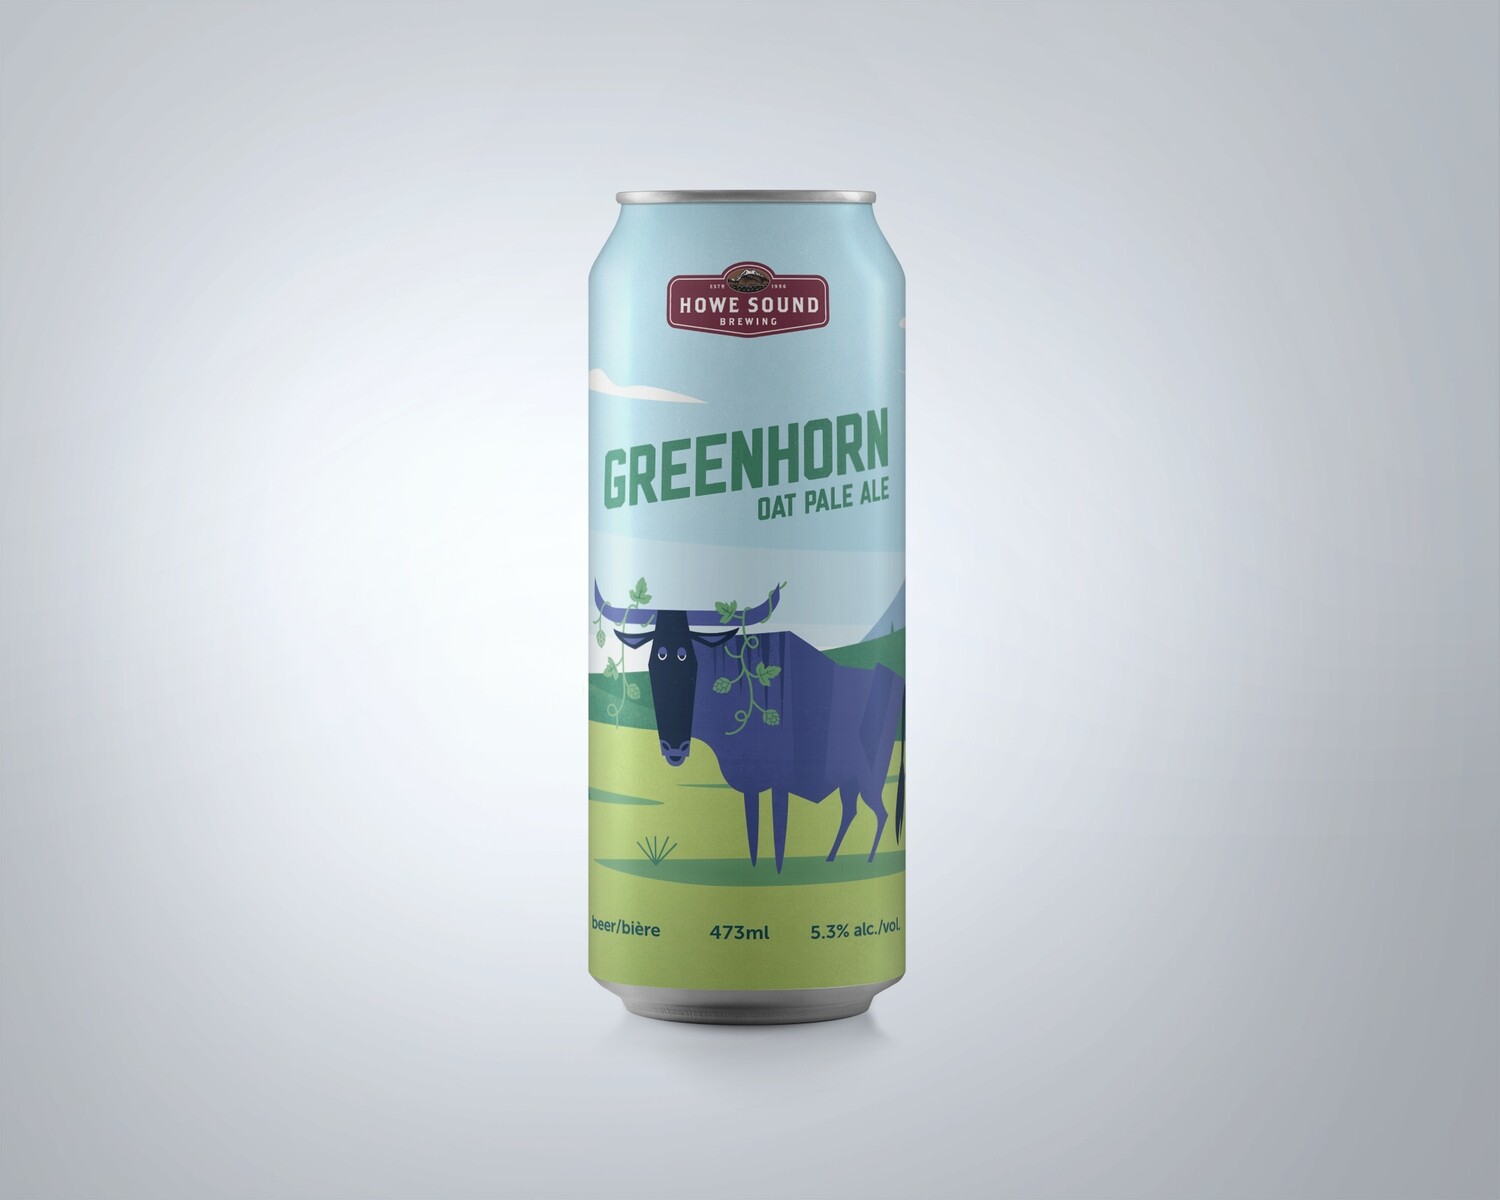 Greenhorn Oat Pale Ale